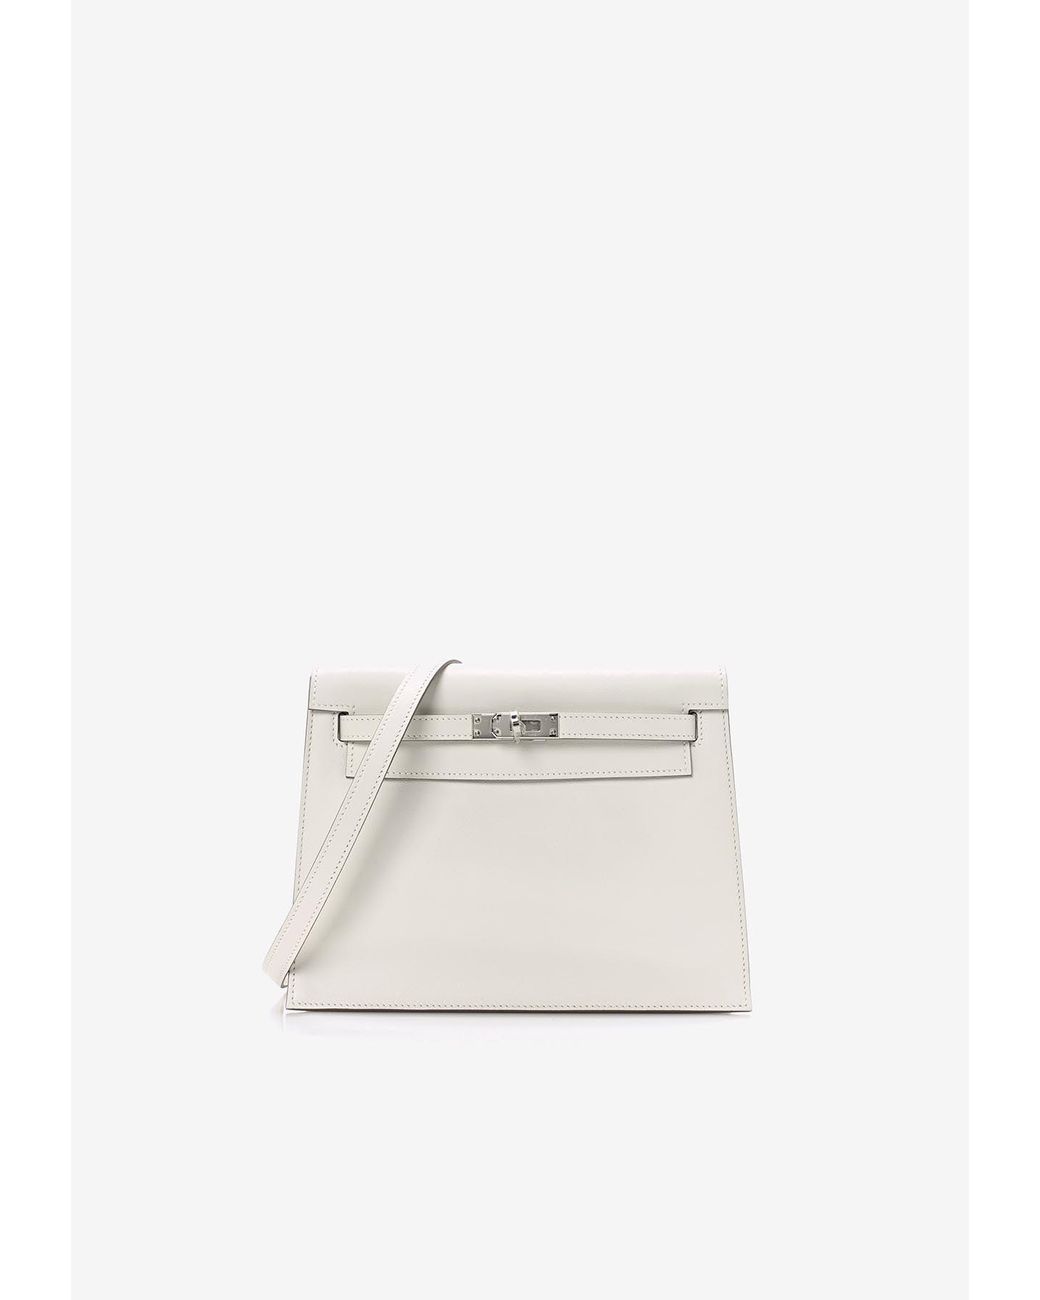 Hermès Kelly Danse Ii Belt Bag In Gris Pale Swift With Palladium Hardware  in White